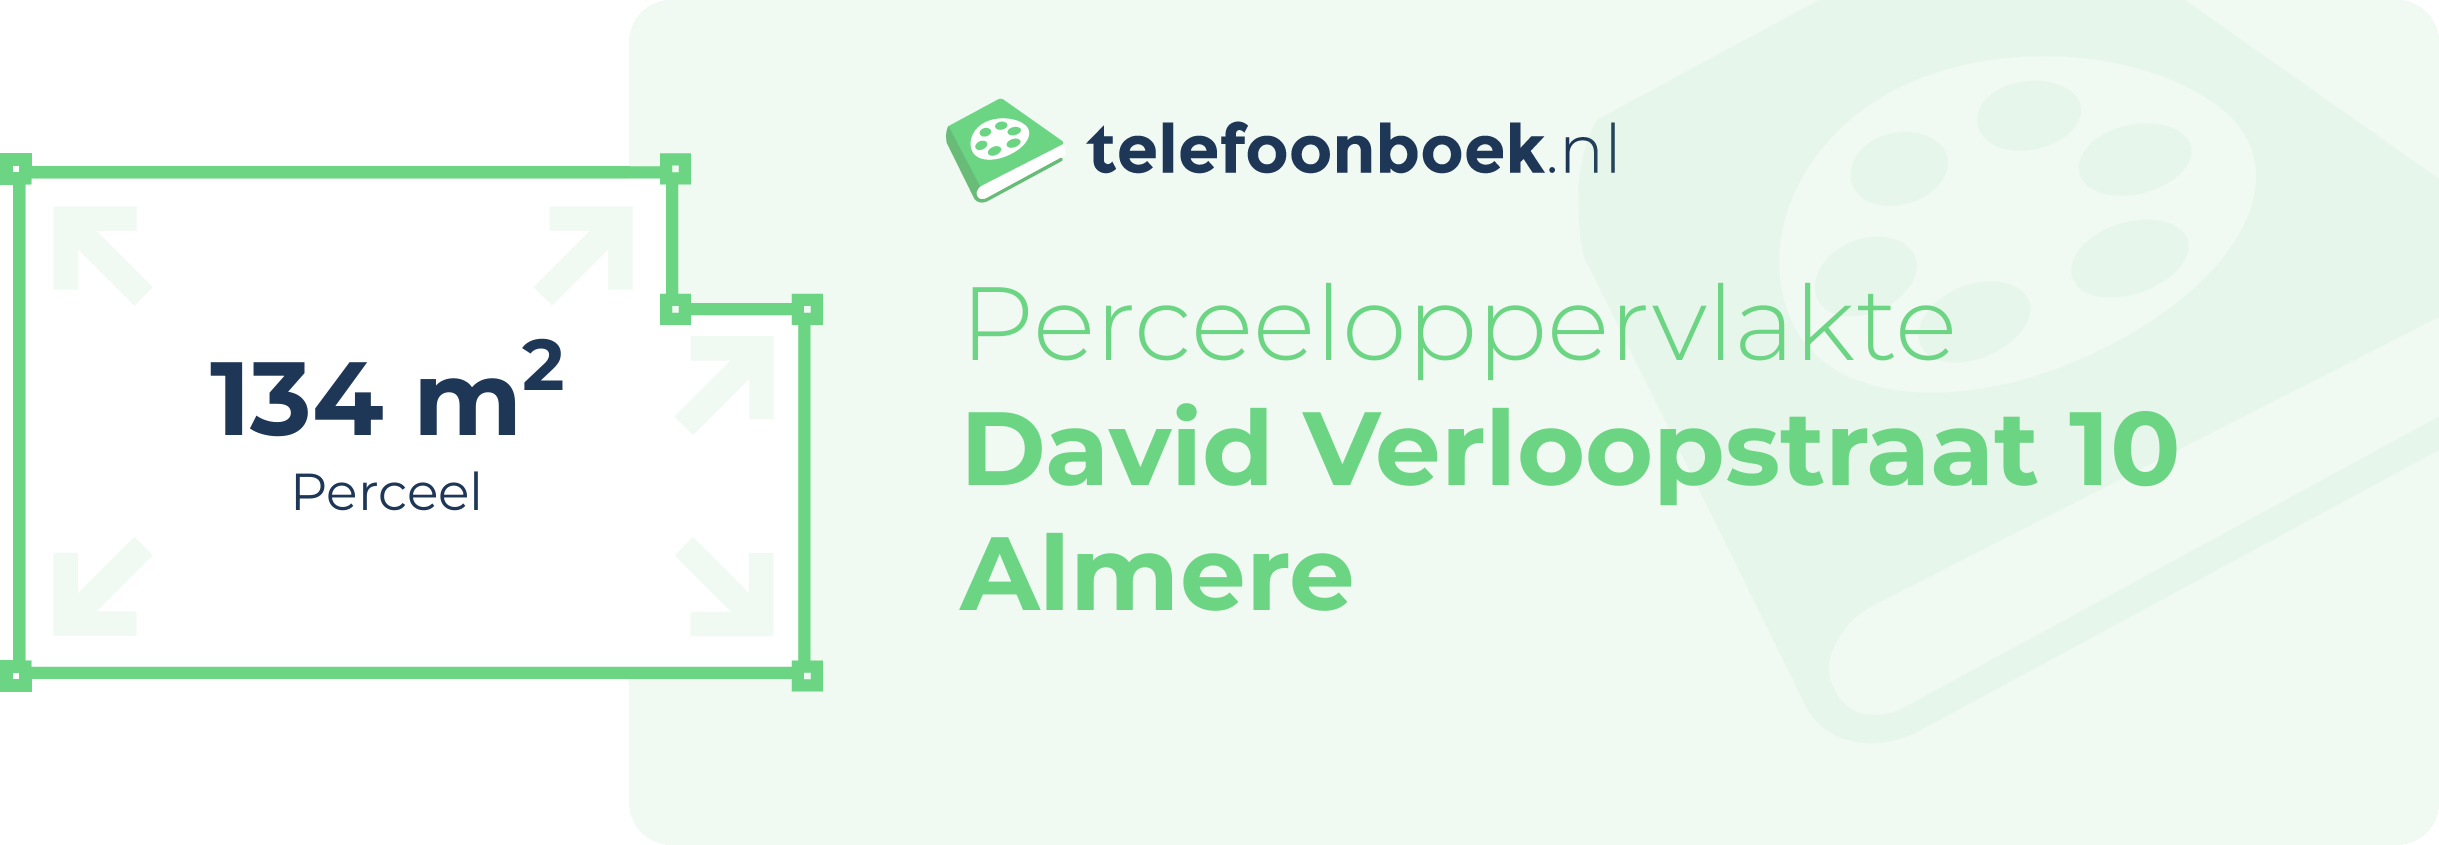 Perceeloppervlakte David Verloopstraat 10 Almere